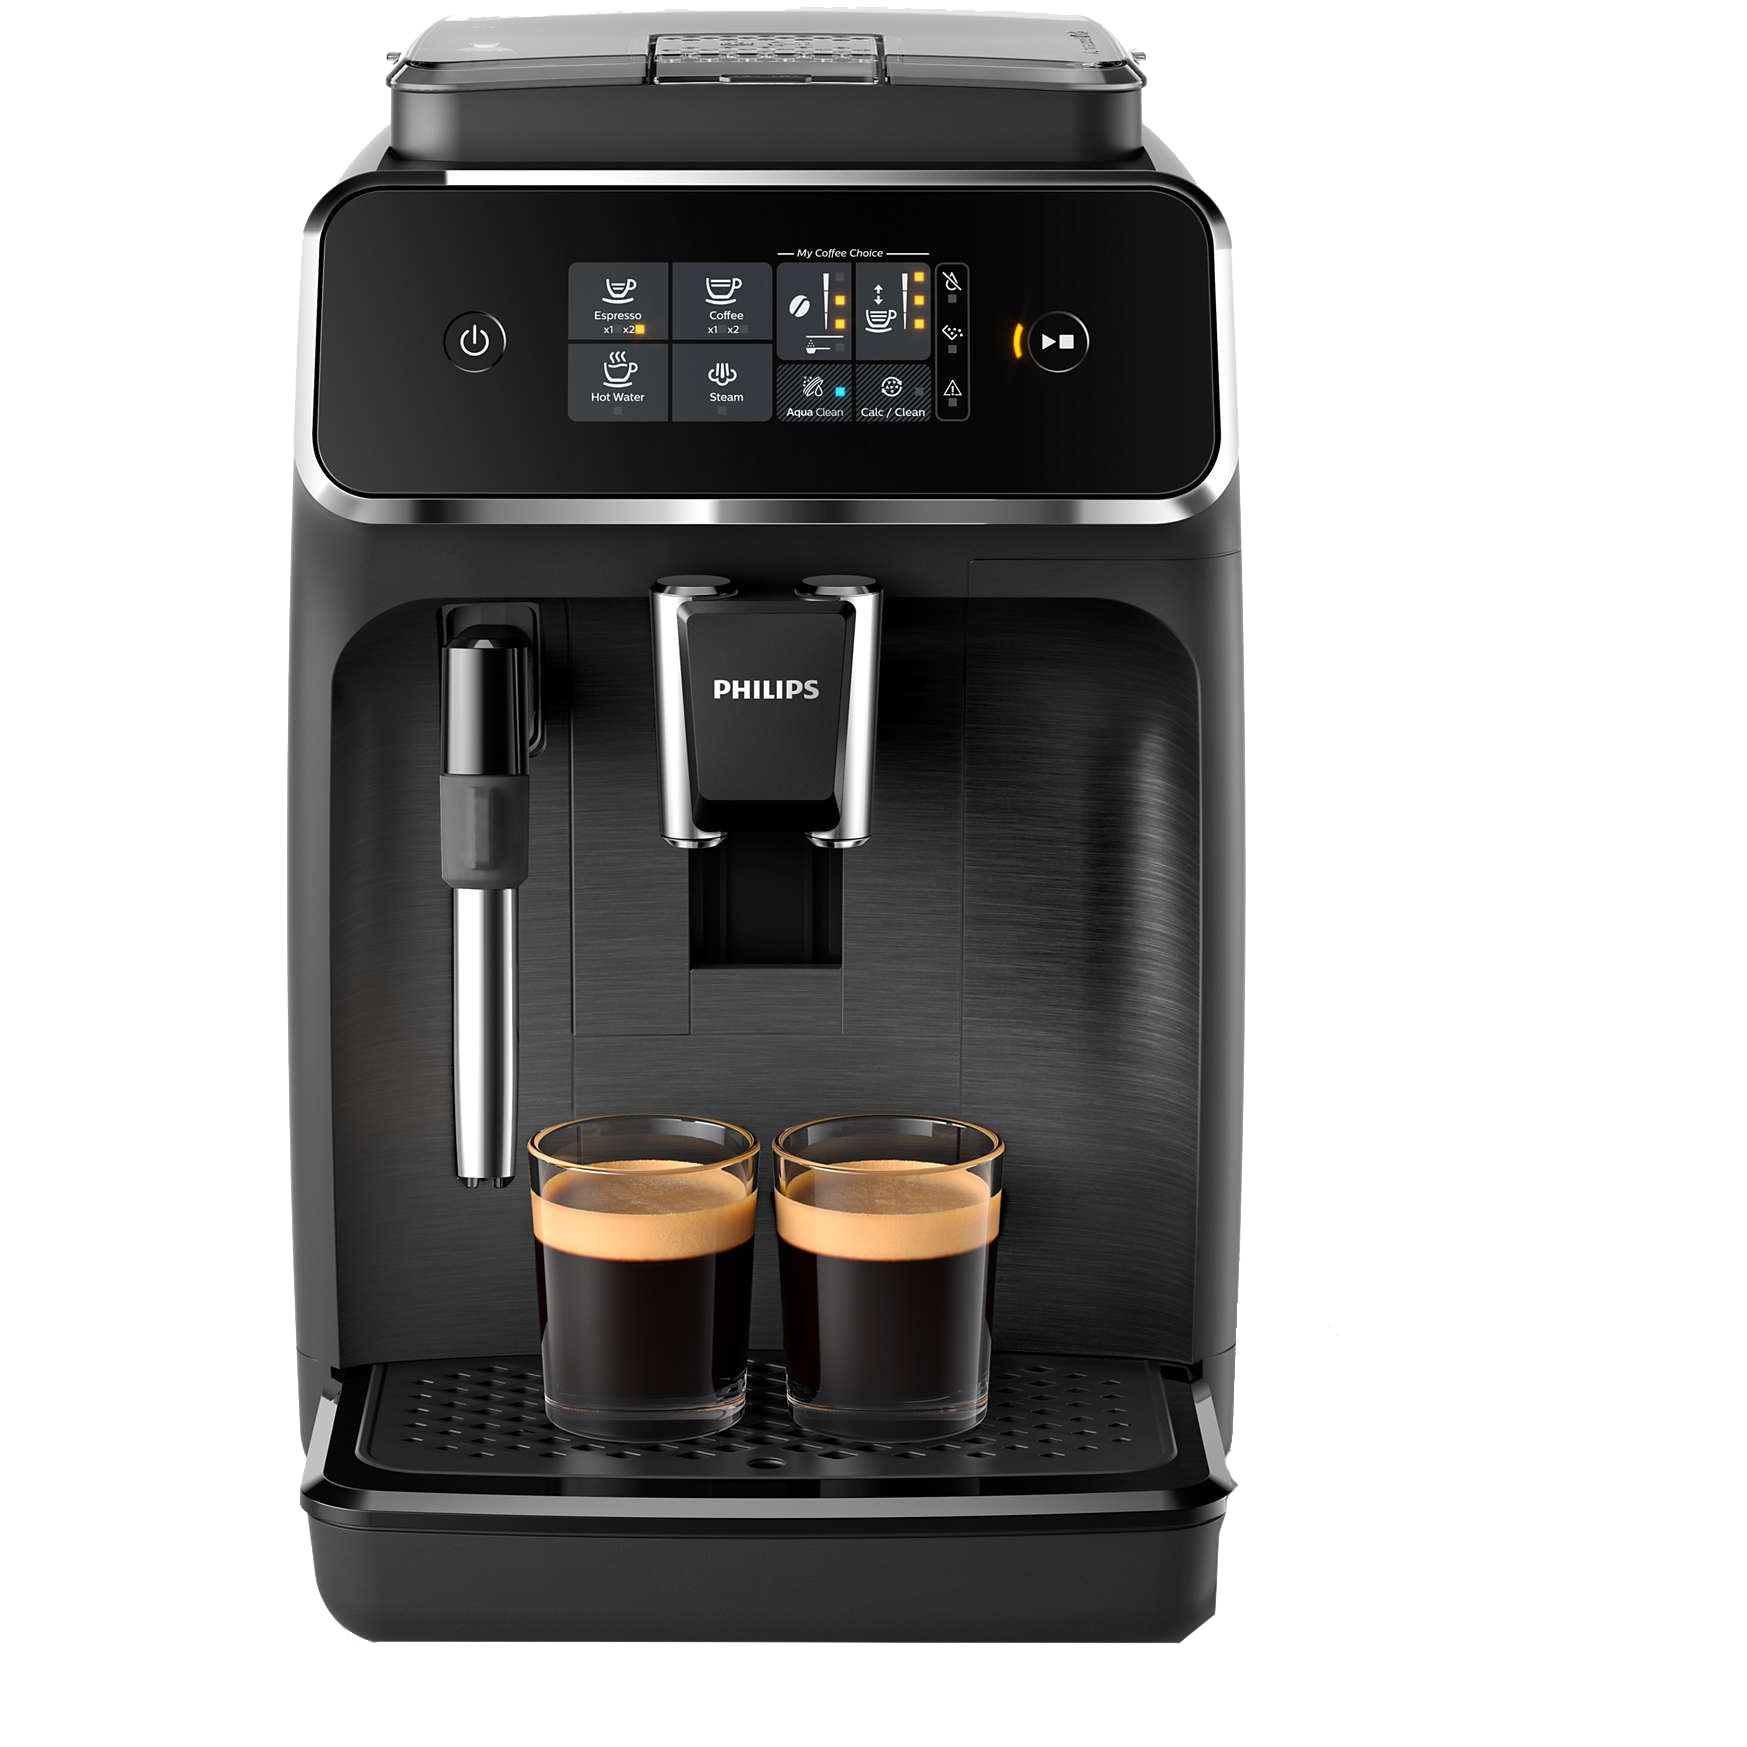 Fotografie Espressor automat Philips EP2220/10, sistem de spumare a laptelui, 2 bauturi, filtru AquaClean, 15 bar, rasnita ceramica, optiune cafea macinata, Negru